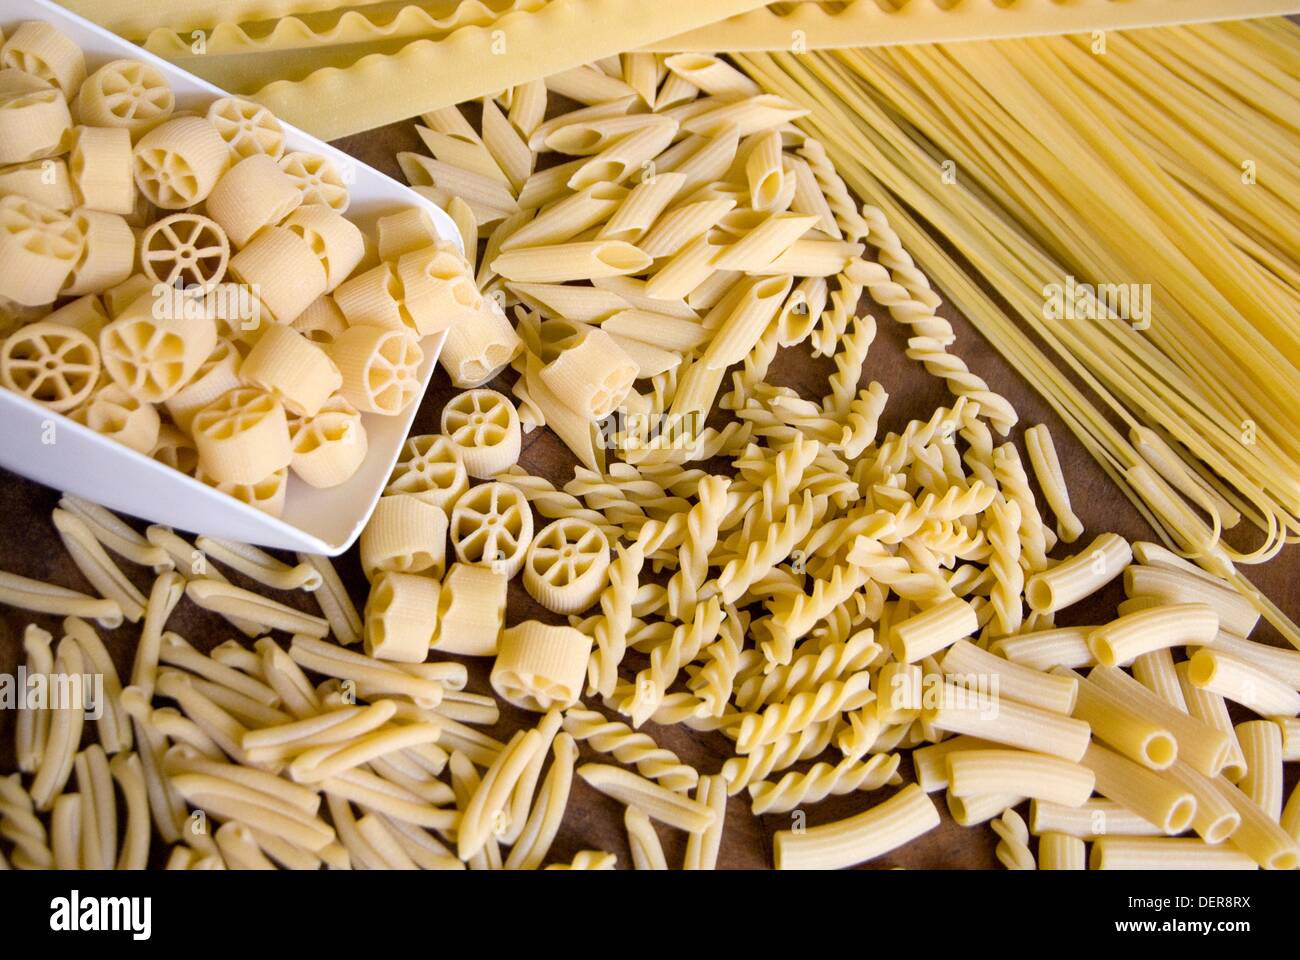 Italy, Maglie, making pasta by Pastificio Benedetto Cavalieri Stock Photo -  Alamy